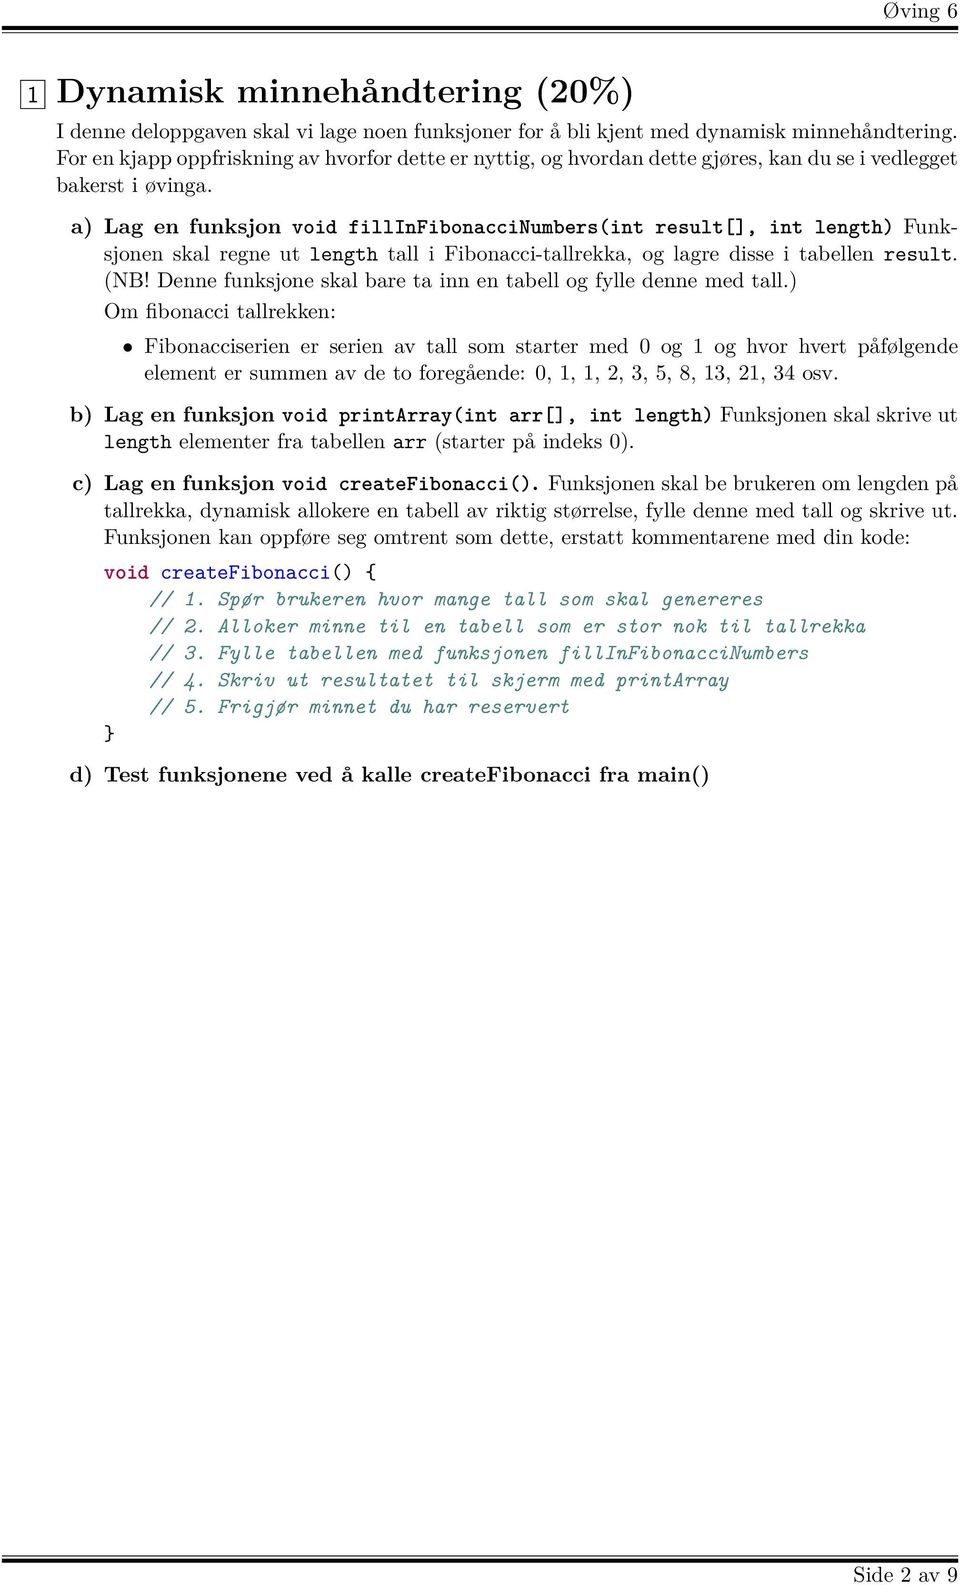 a) Lag en funksjon void fillinfibonaccinumbers(int result[], int length) Funksjonen skal regne ut length tall i Fibonacci-tallrekka, og lagre disse i tabellen result. (NB!